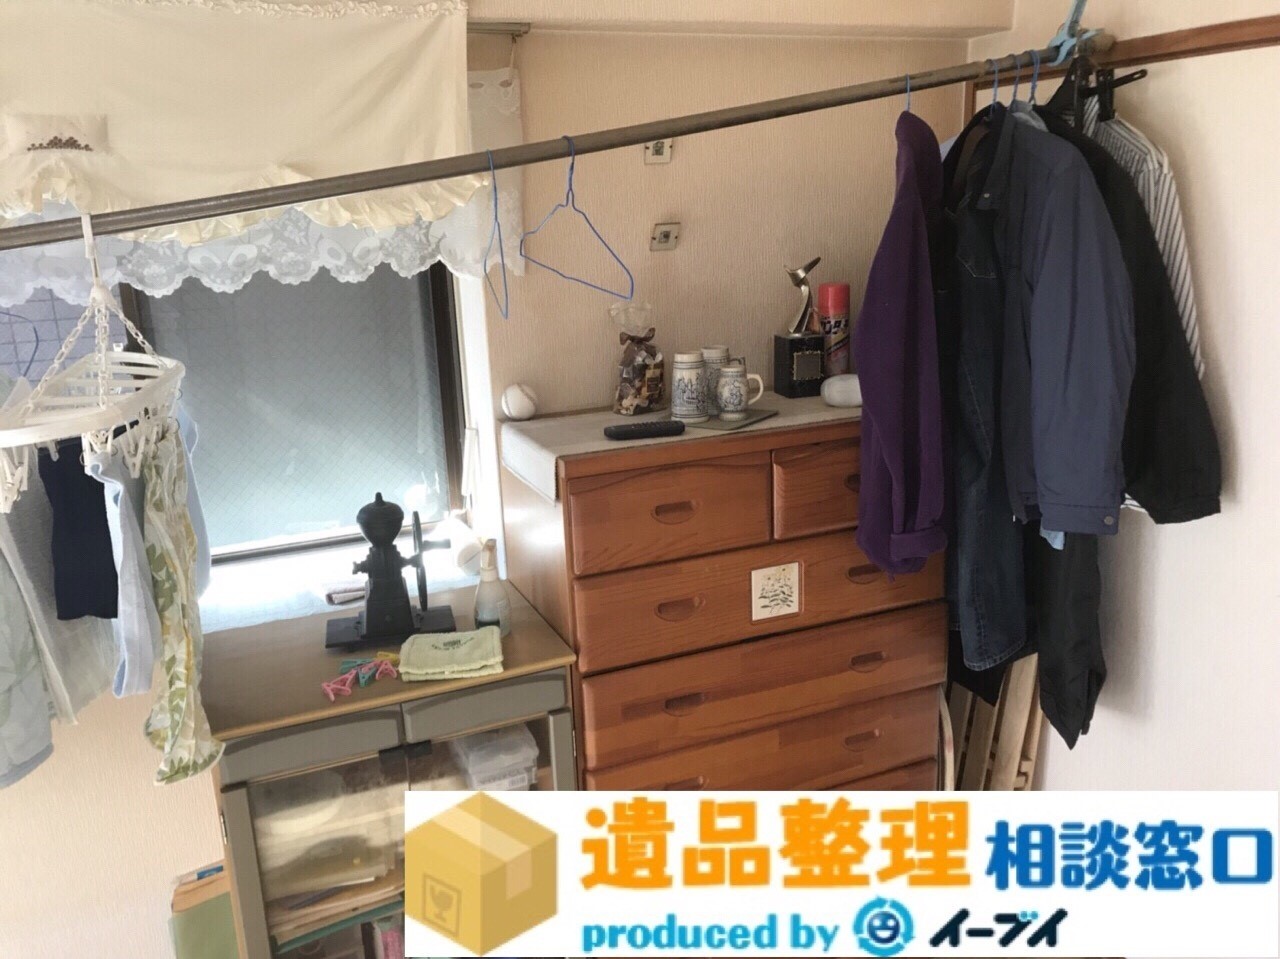 大阪府池田市で遺品整理の作業で家具処分をしました。のアイキャッチ